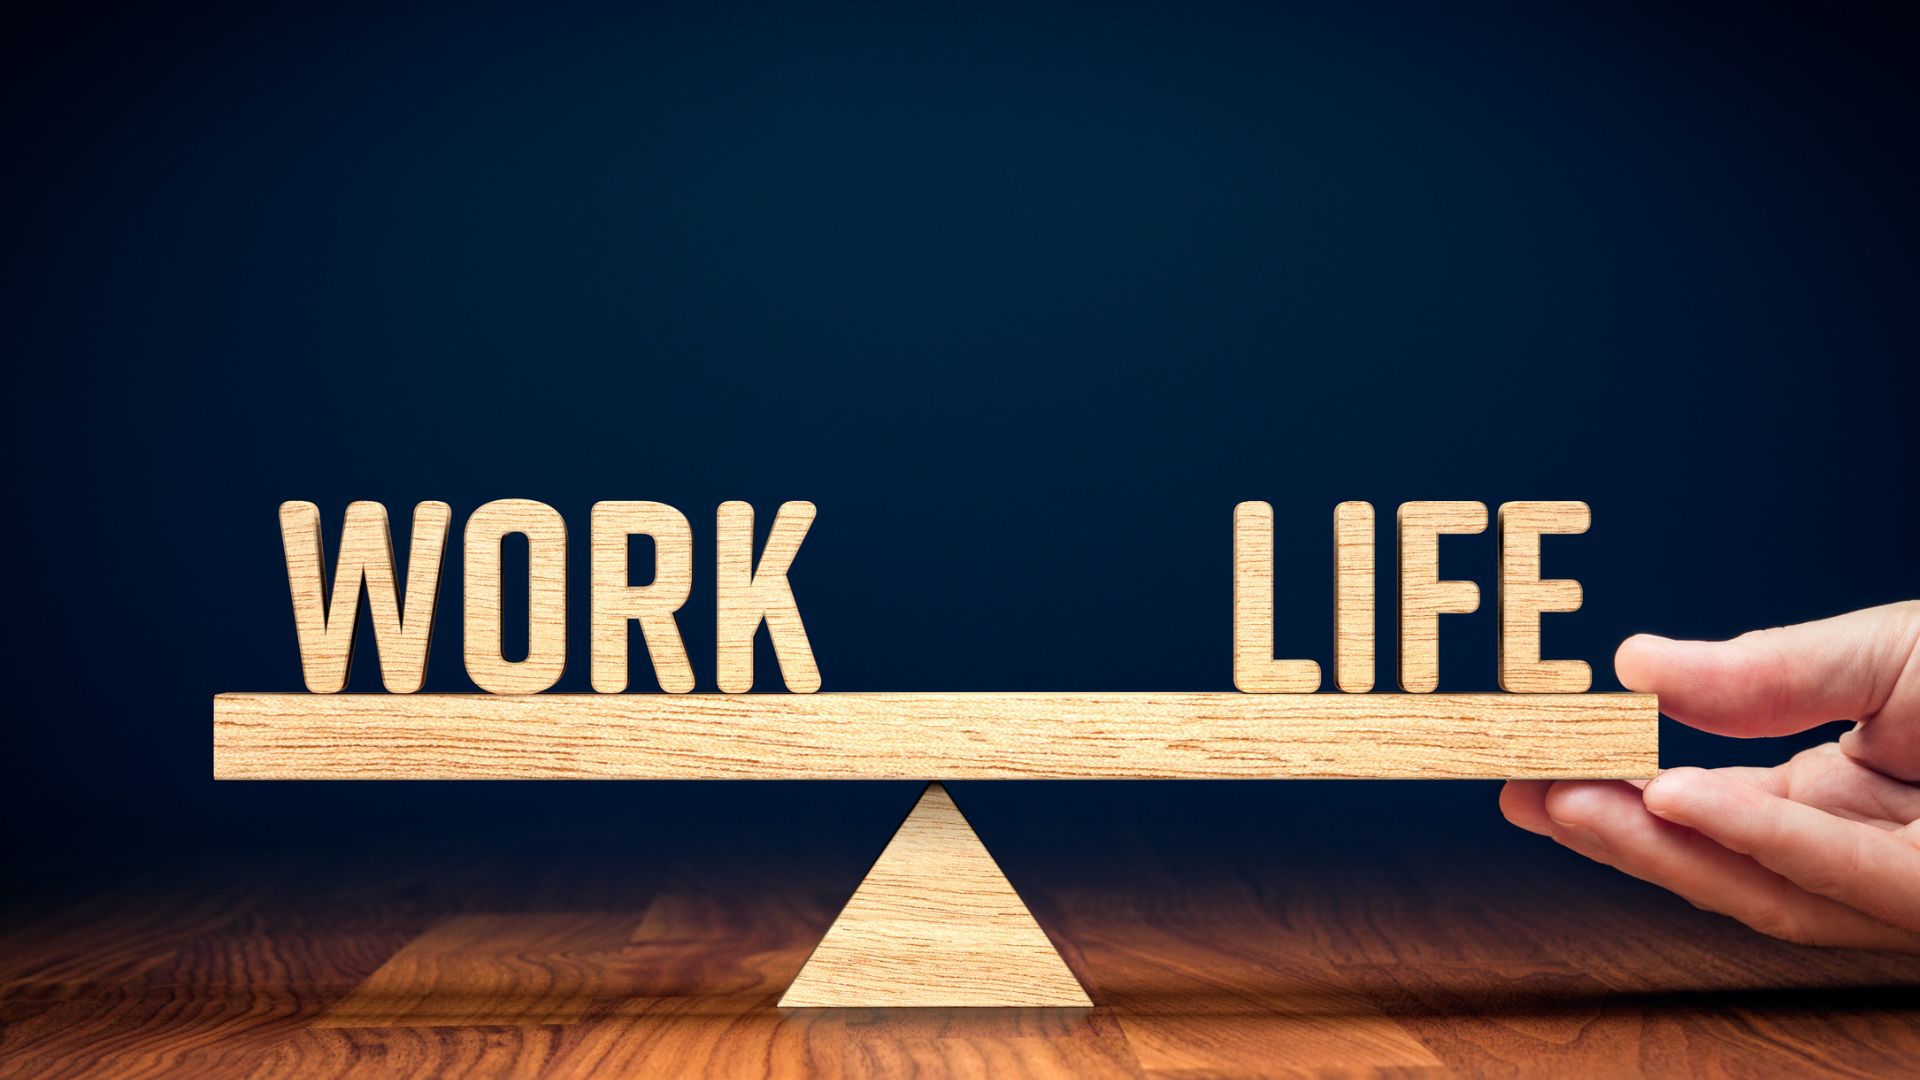 Work life balance als Selbständiger und Unternehmer